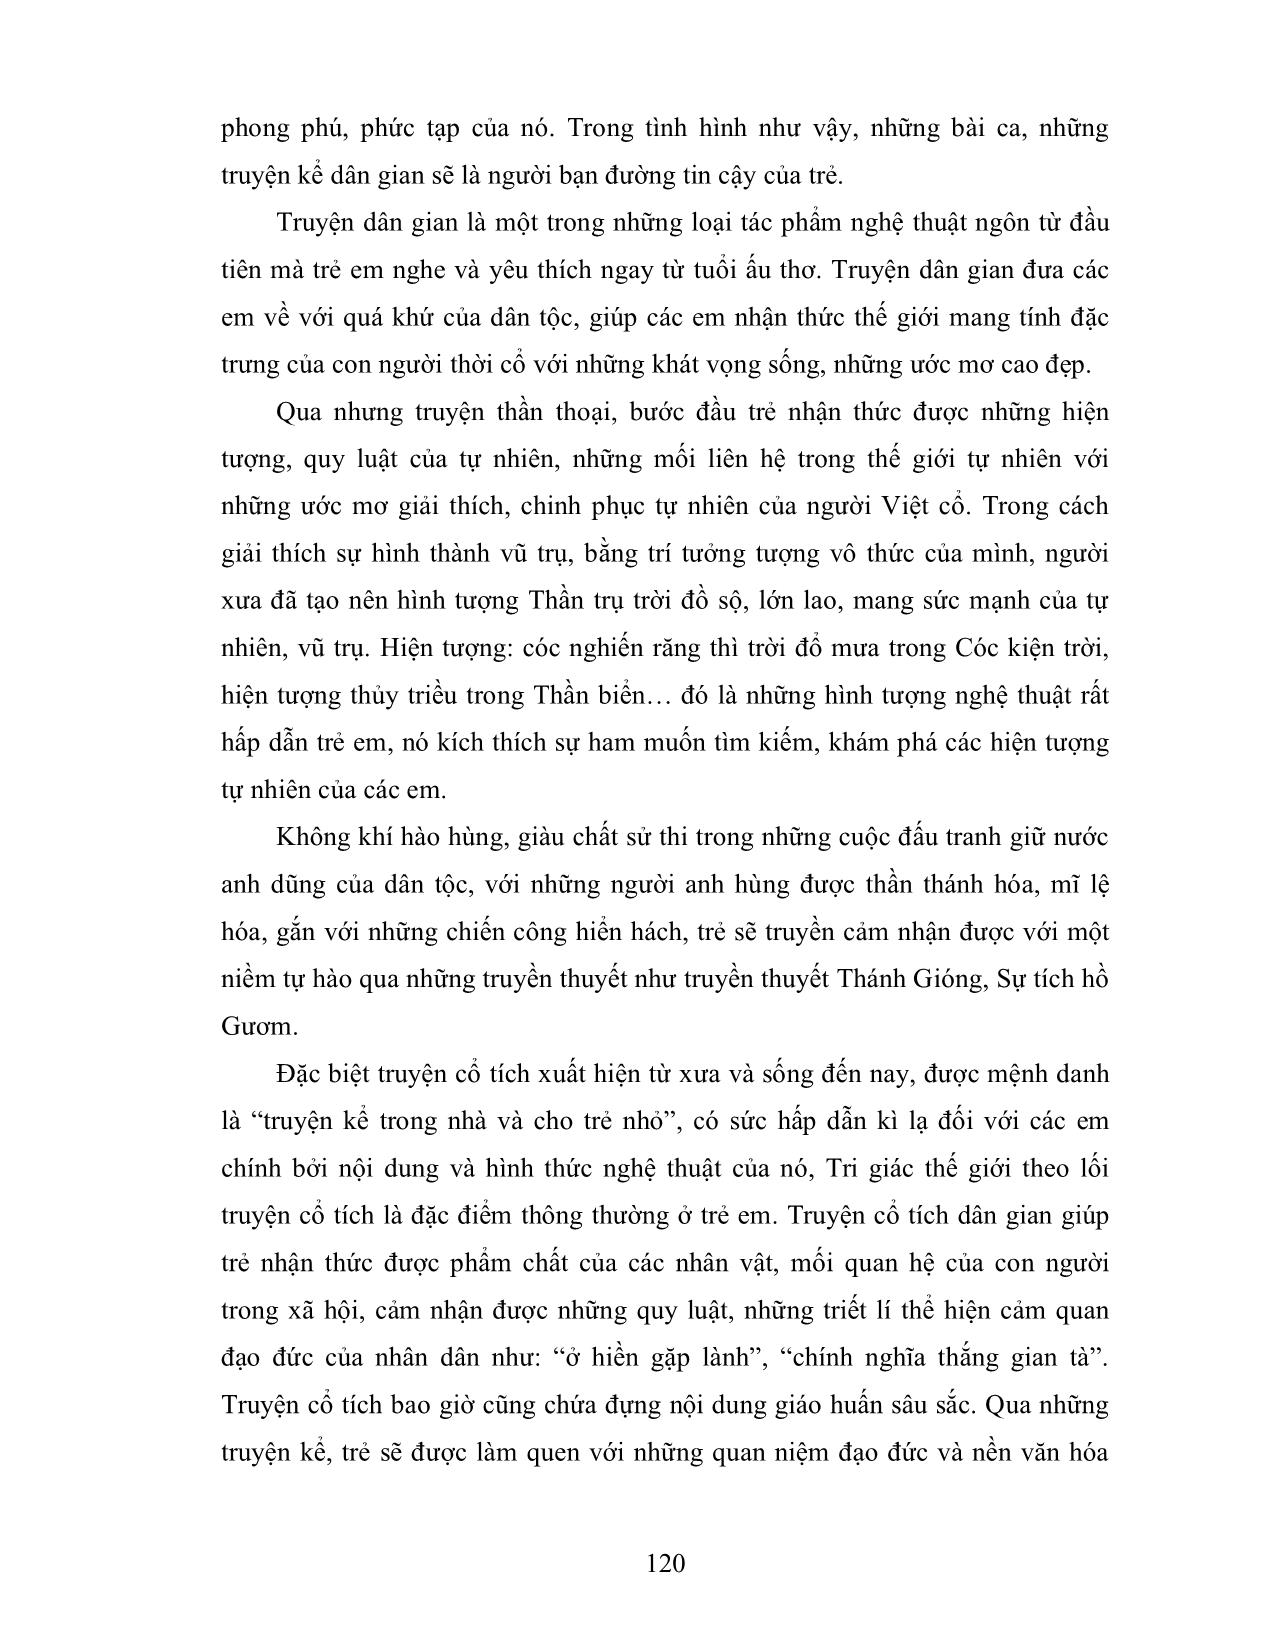 Giáo trình Phương pháp cho trẻ làm quen với tác phẩm văn học (Phần 2) trang 2